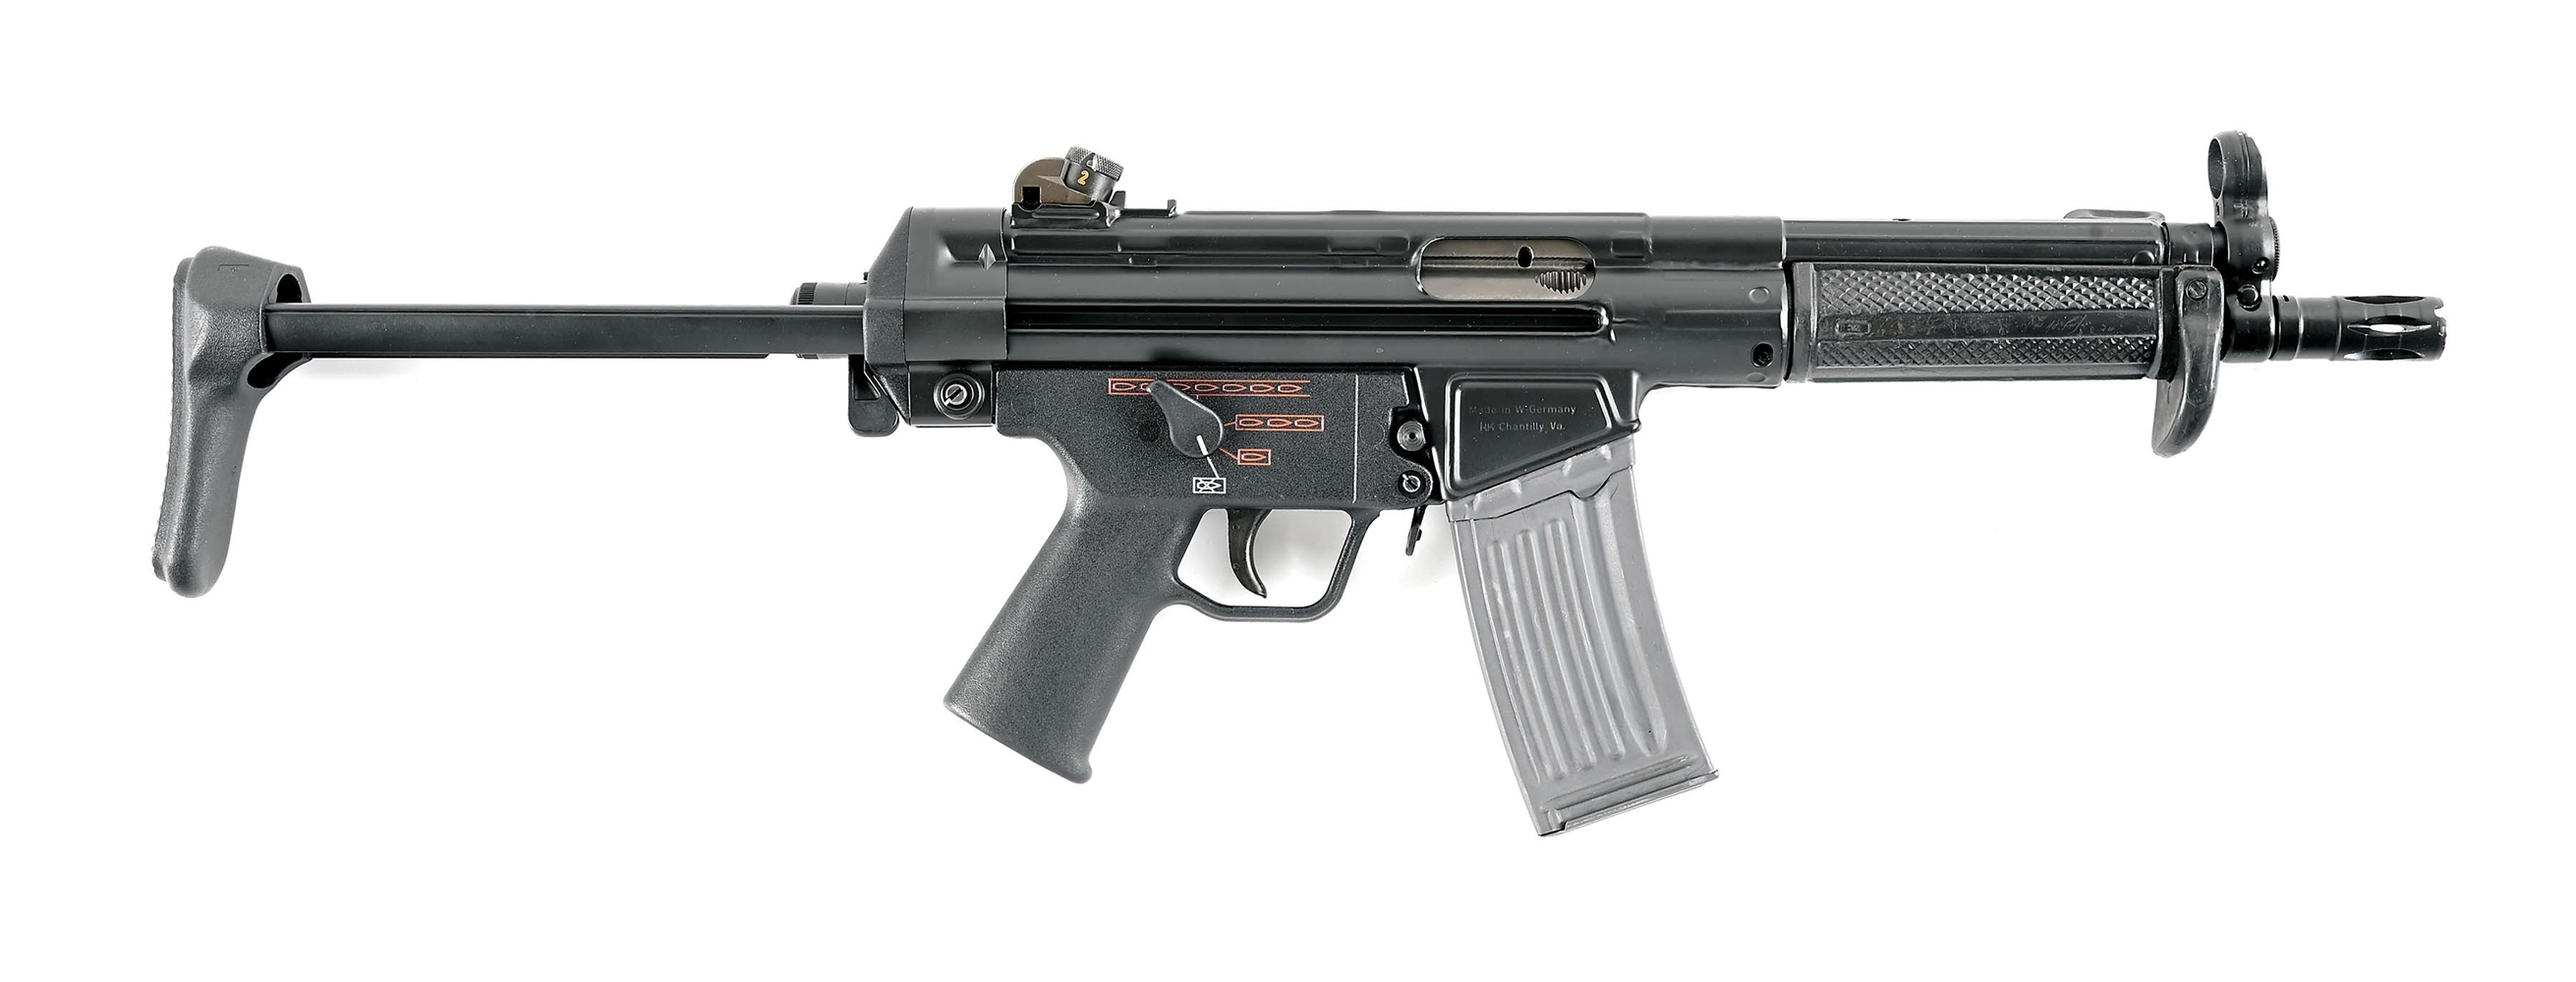 (N) VERY NICE HECKLER & KOCH HK53 MACHINE GUN (PRE-86 DEALER SAMPLE).